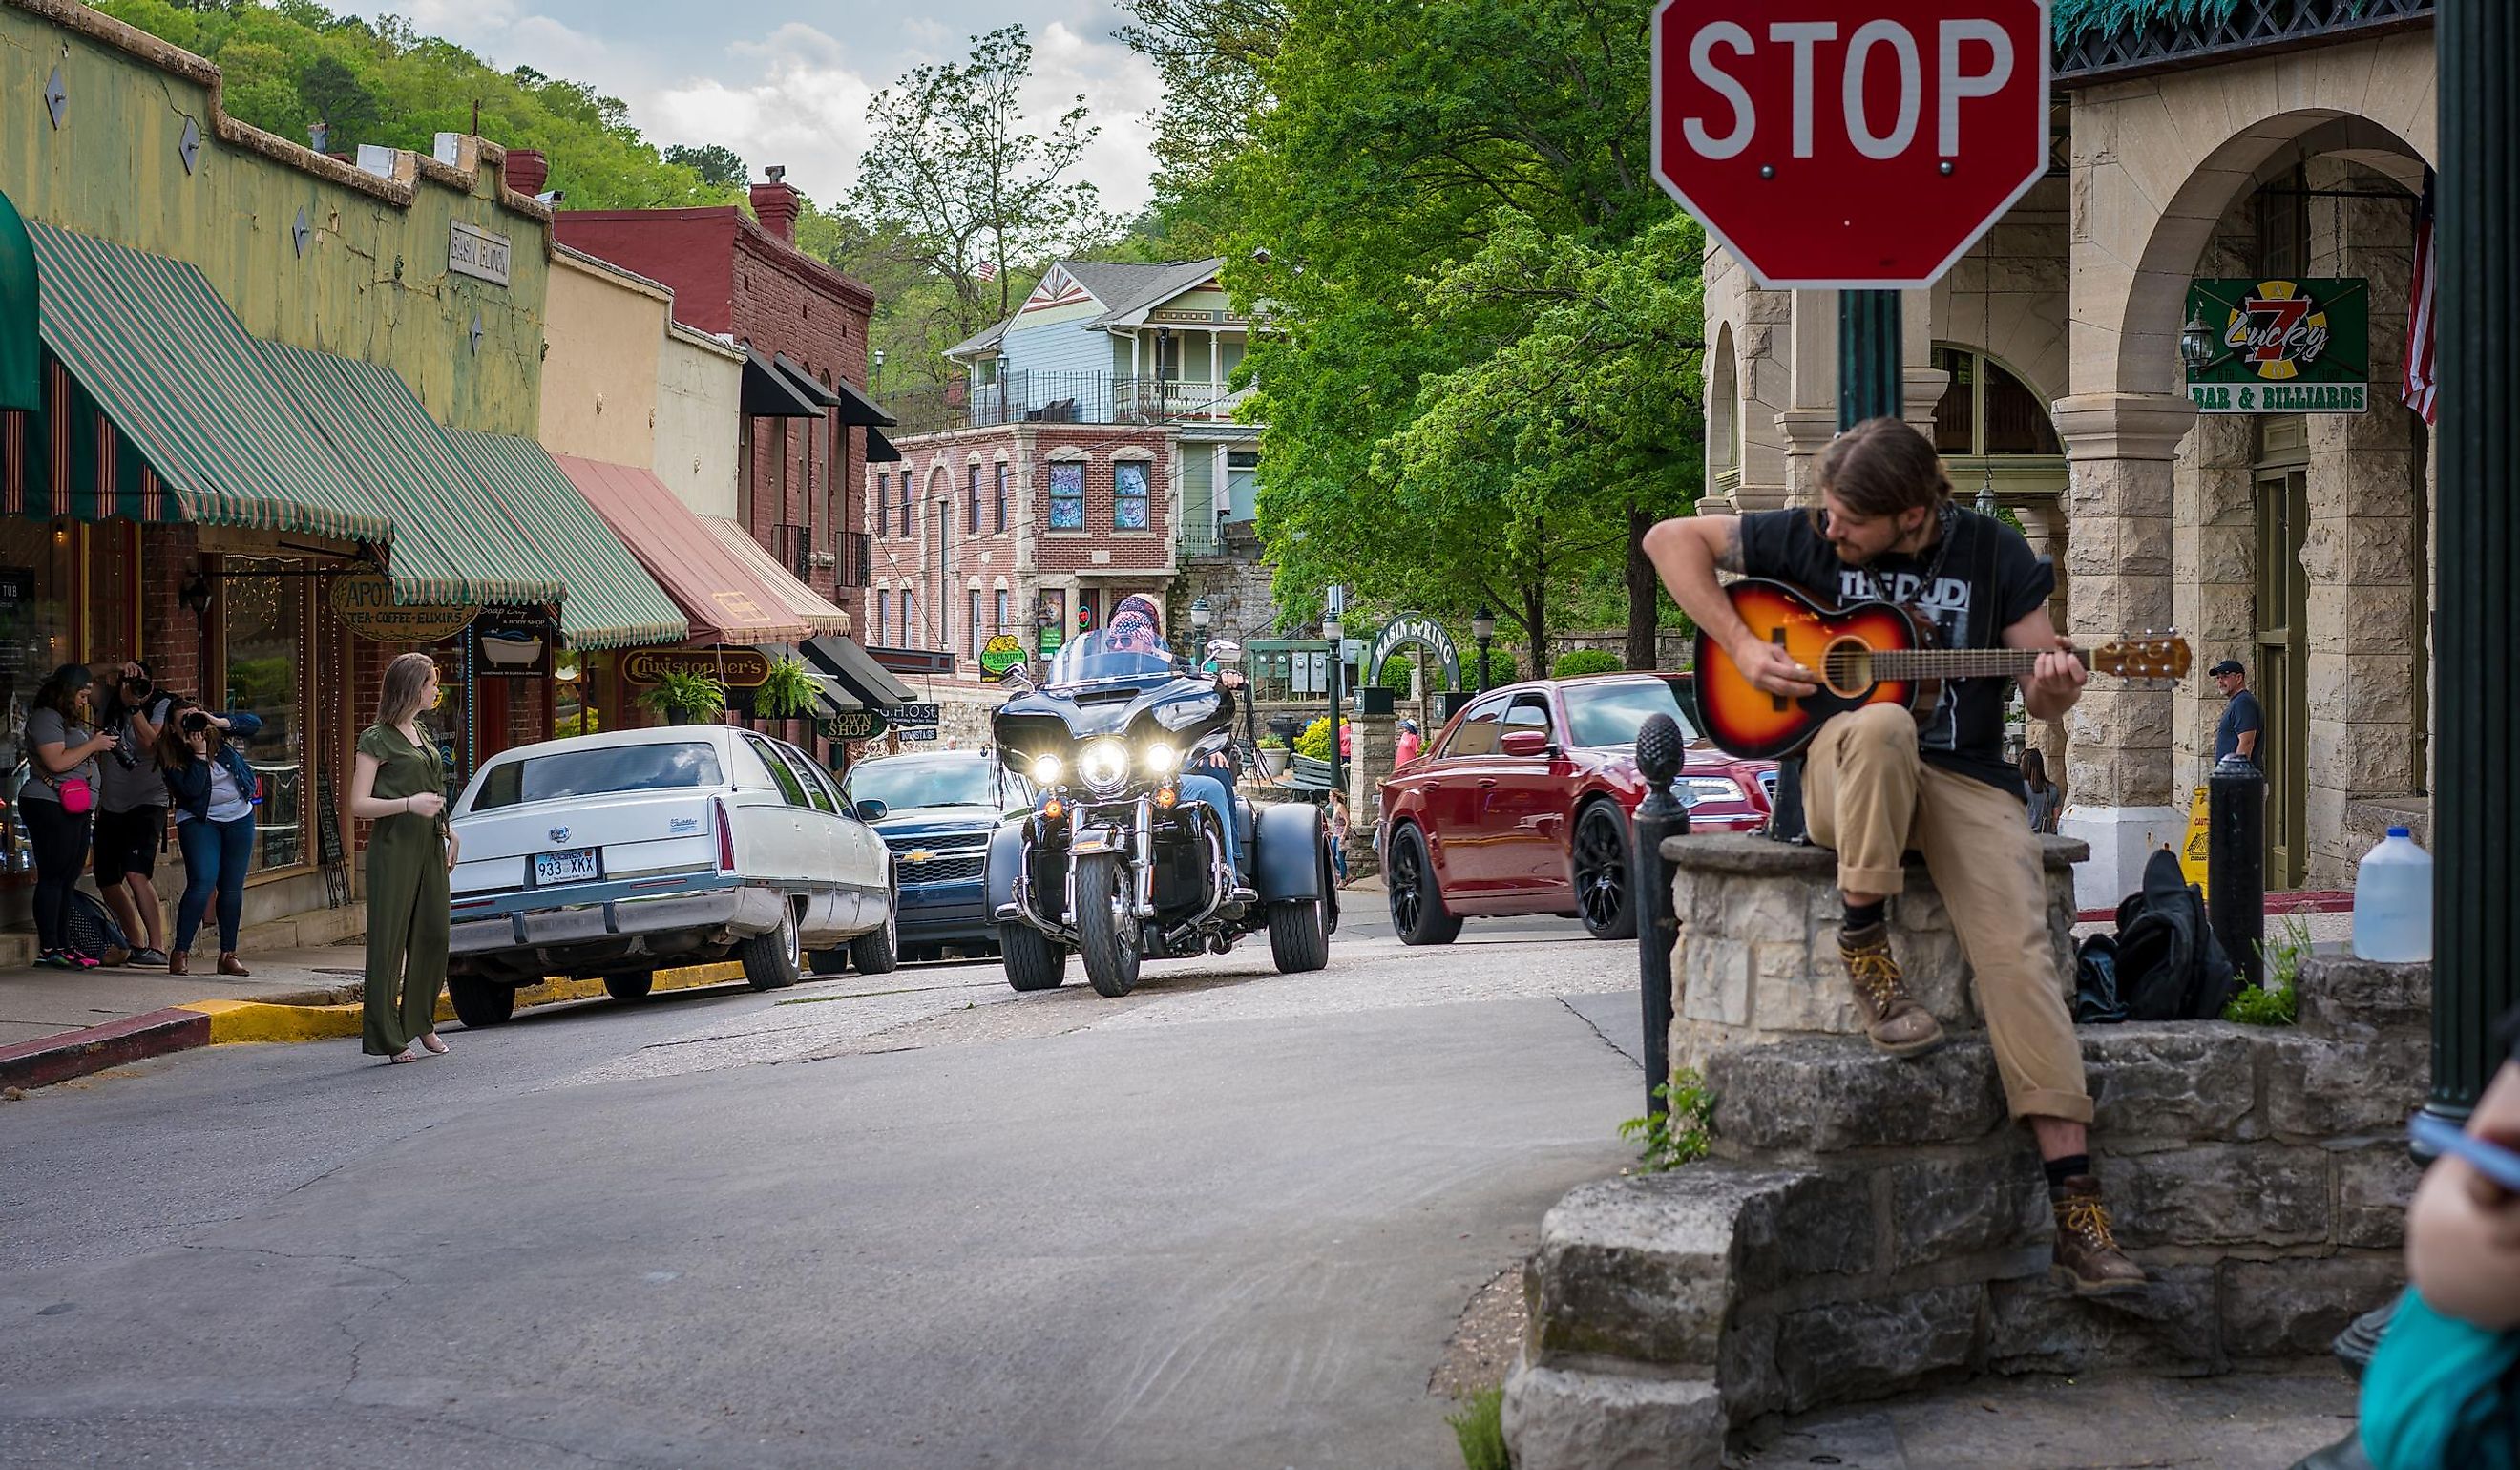 Eureka Springs, Arkansas Bikers riding motorcycles downtown, Man playing guitar